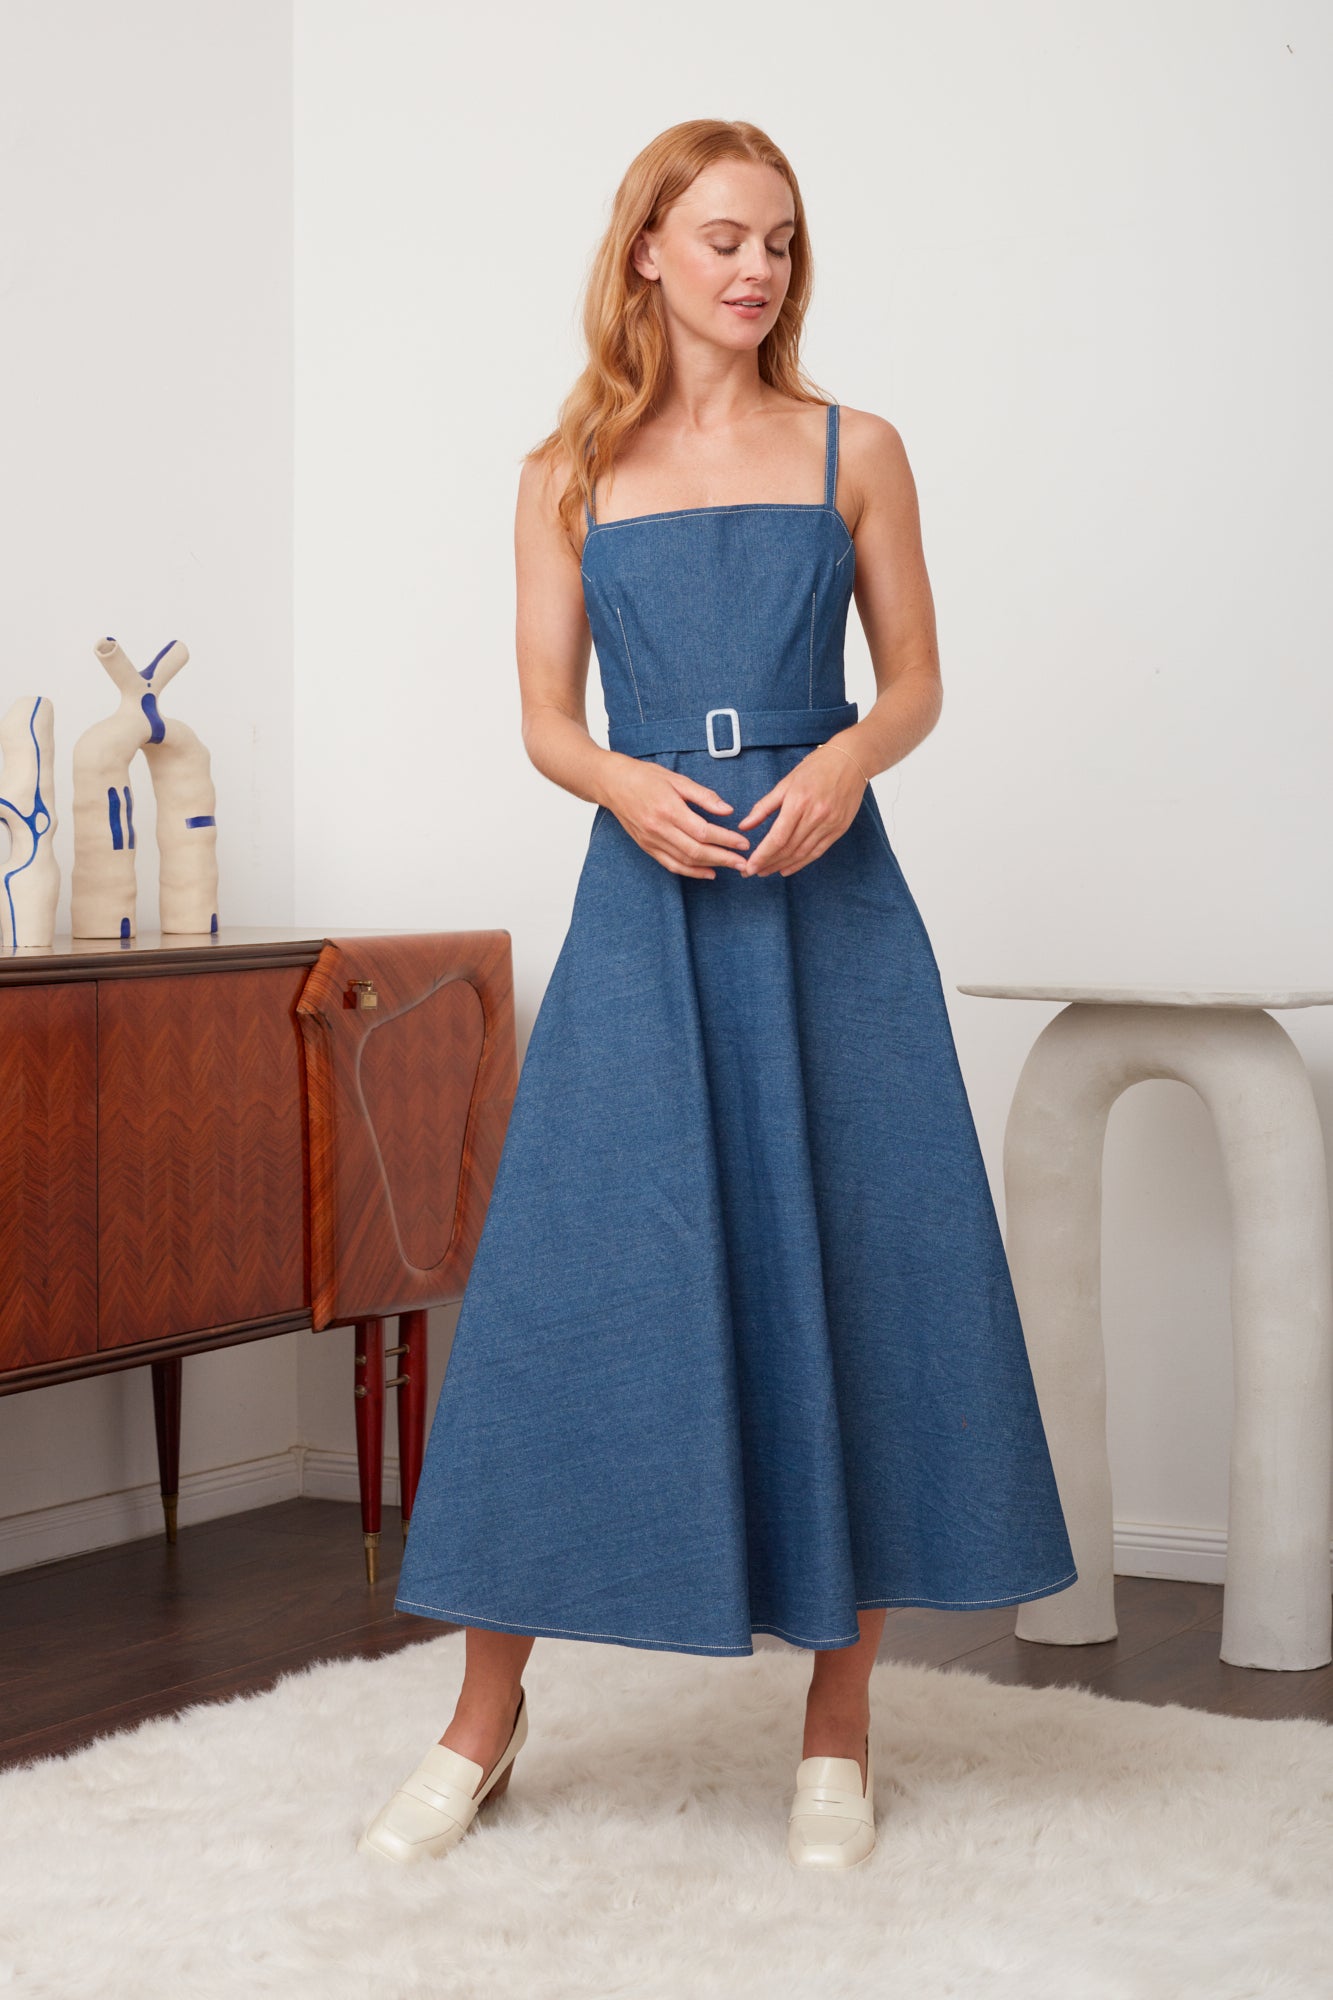 MATISSA Blue Denim Dress - Flattering Circle Skirt Silhouette